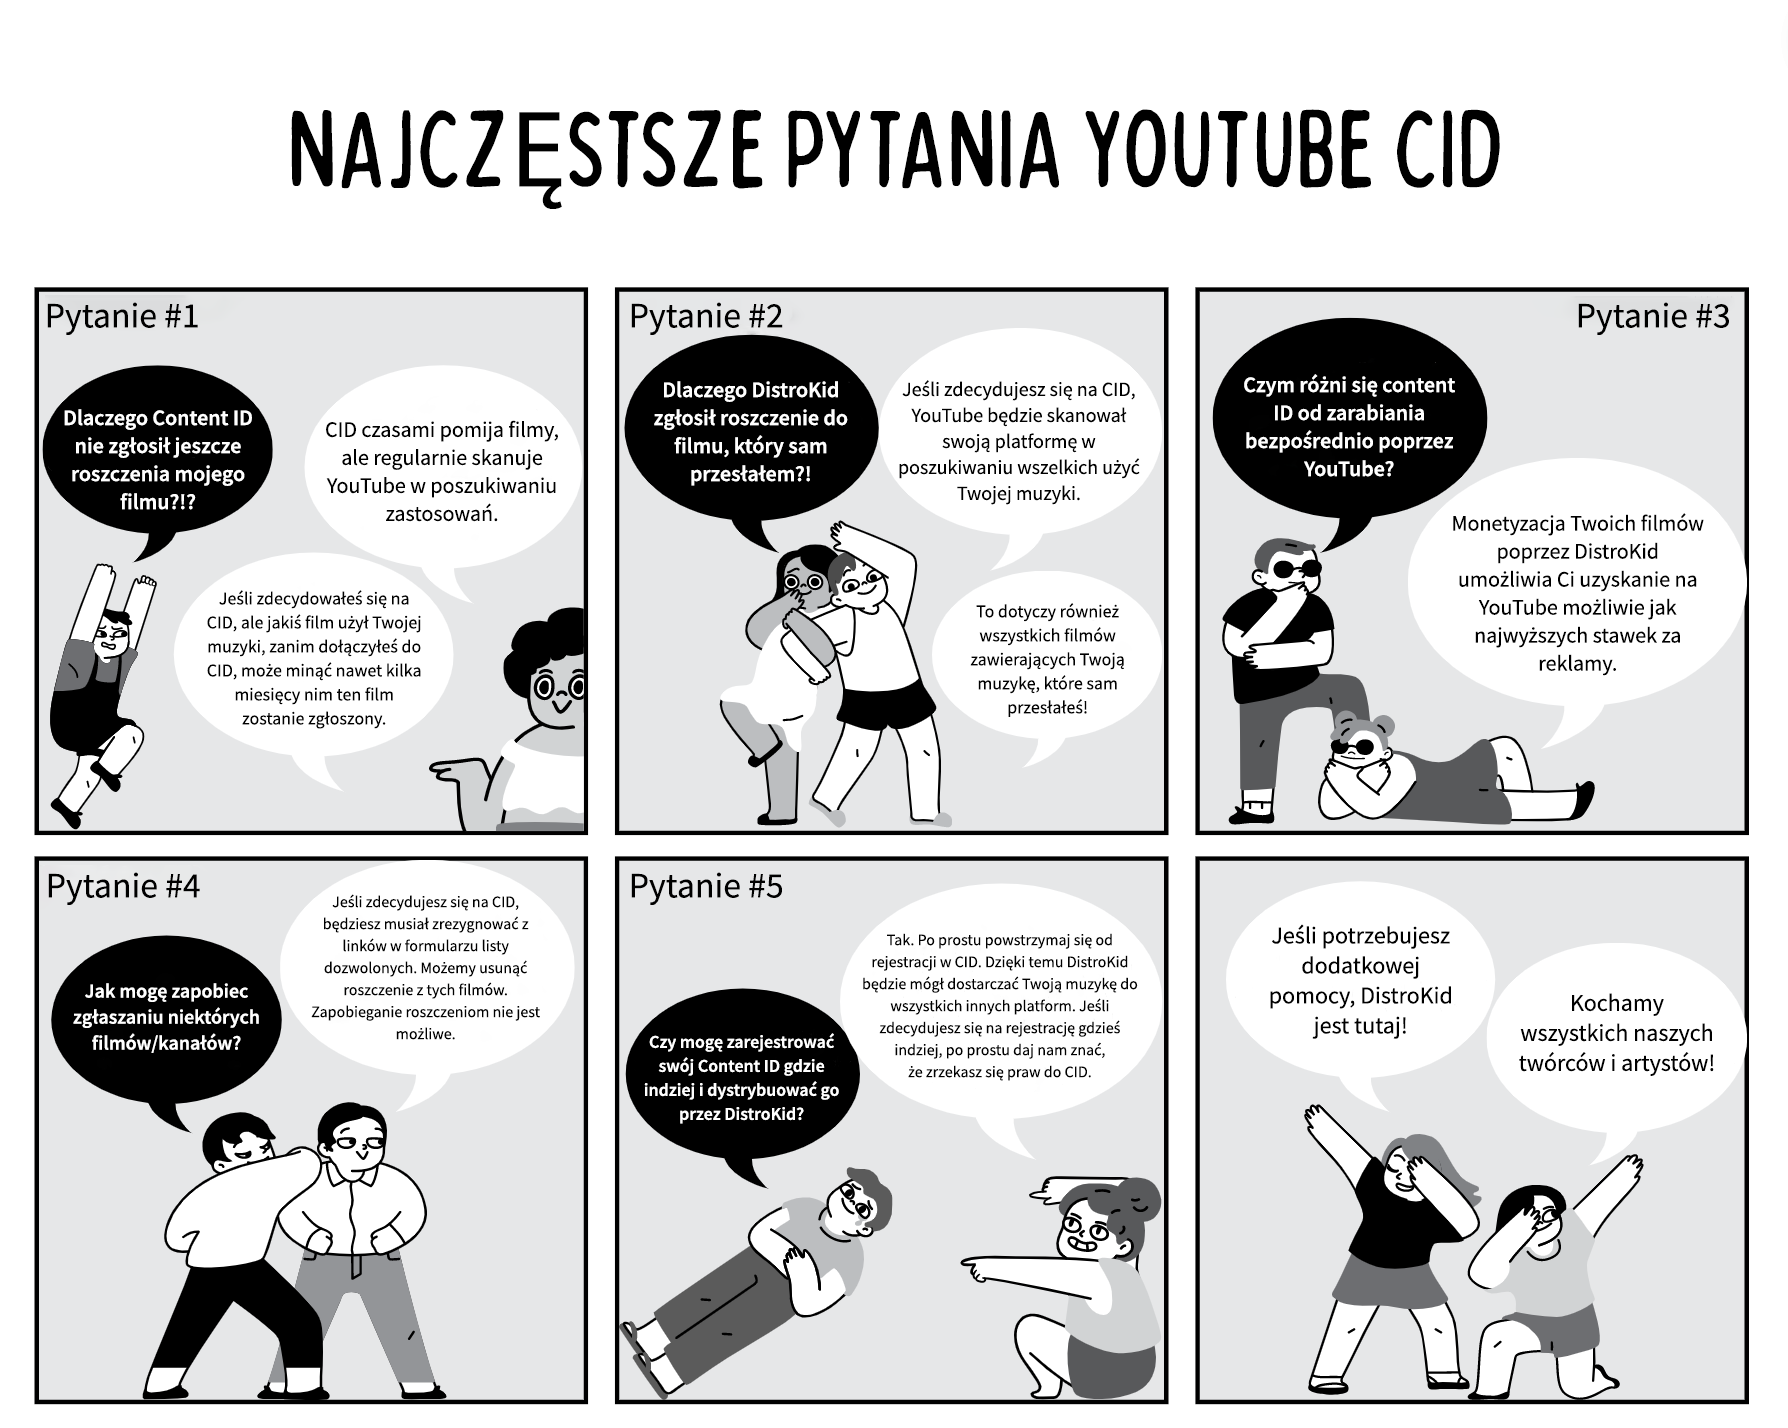 pl_youtube_CID_comics.png